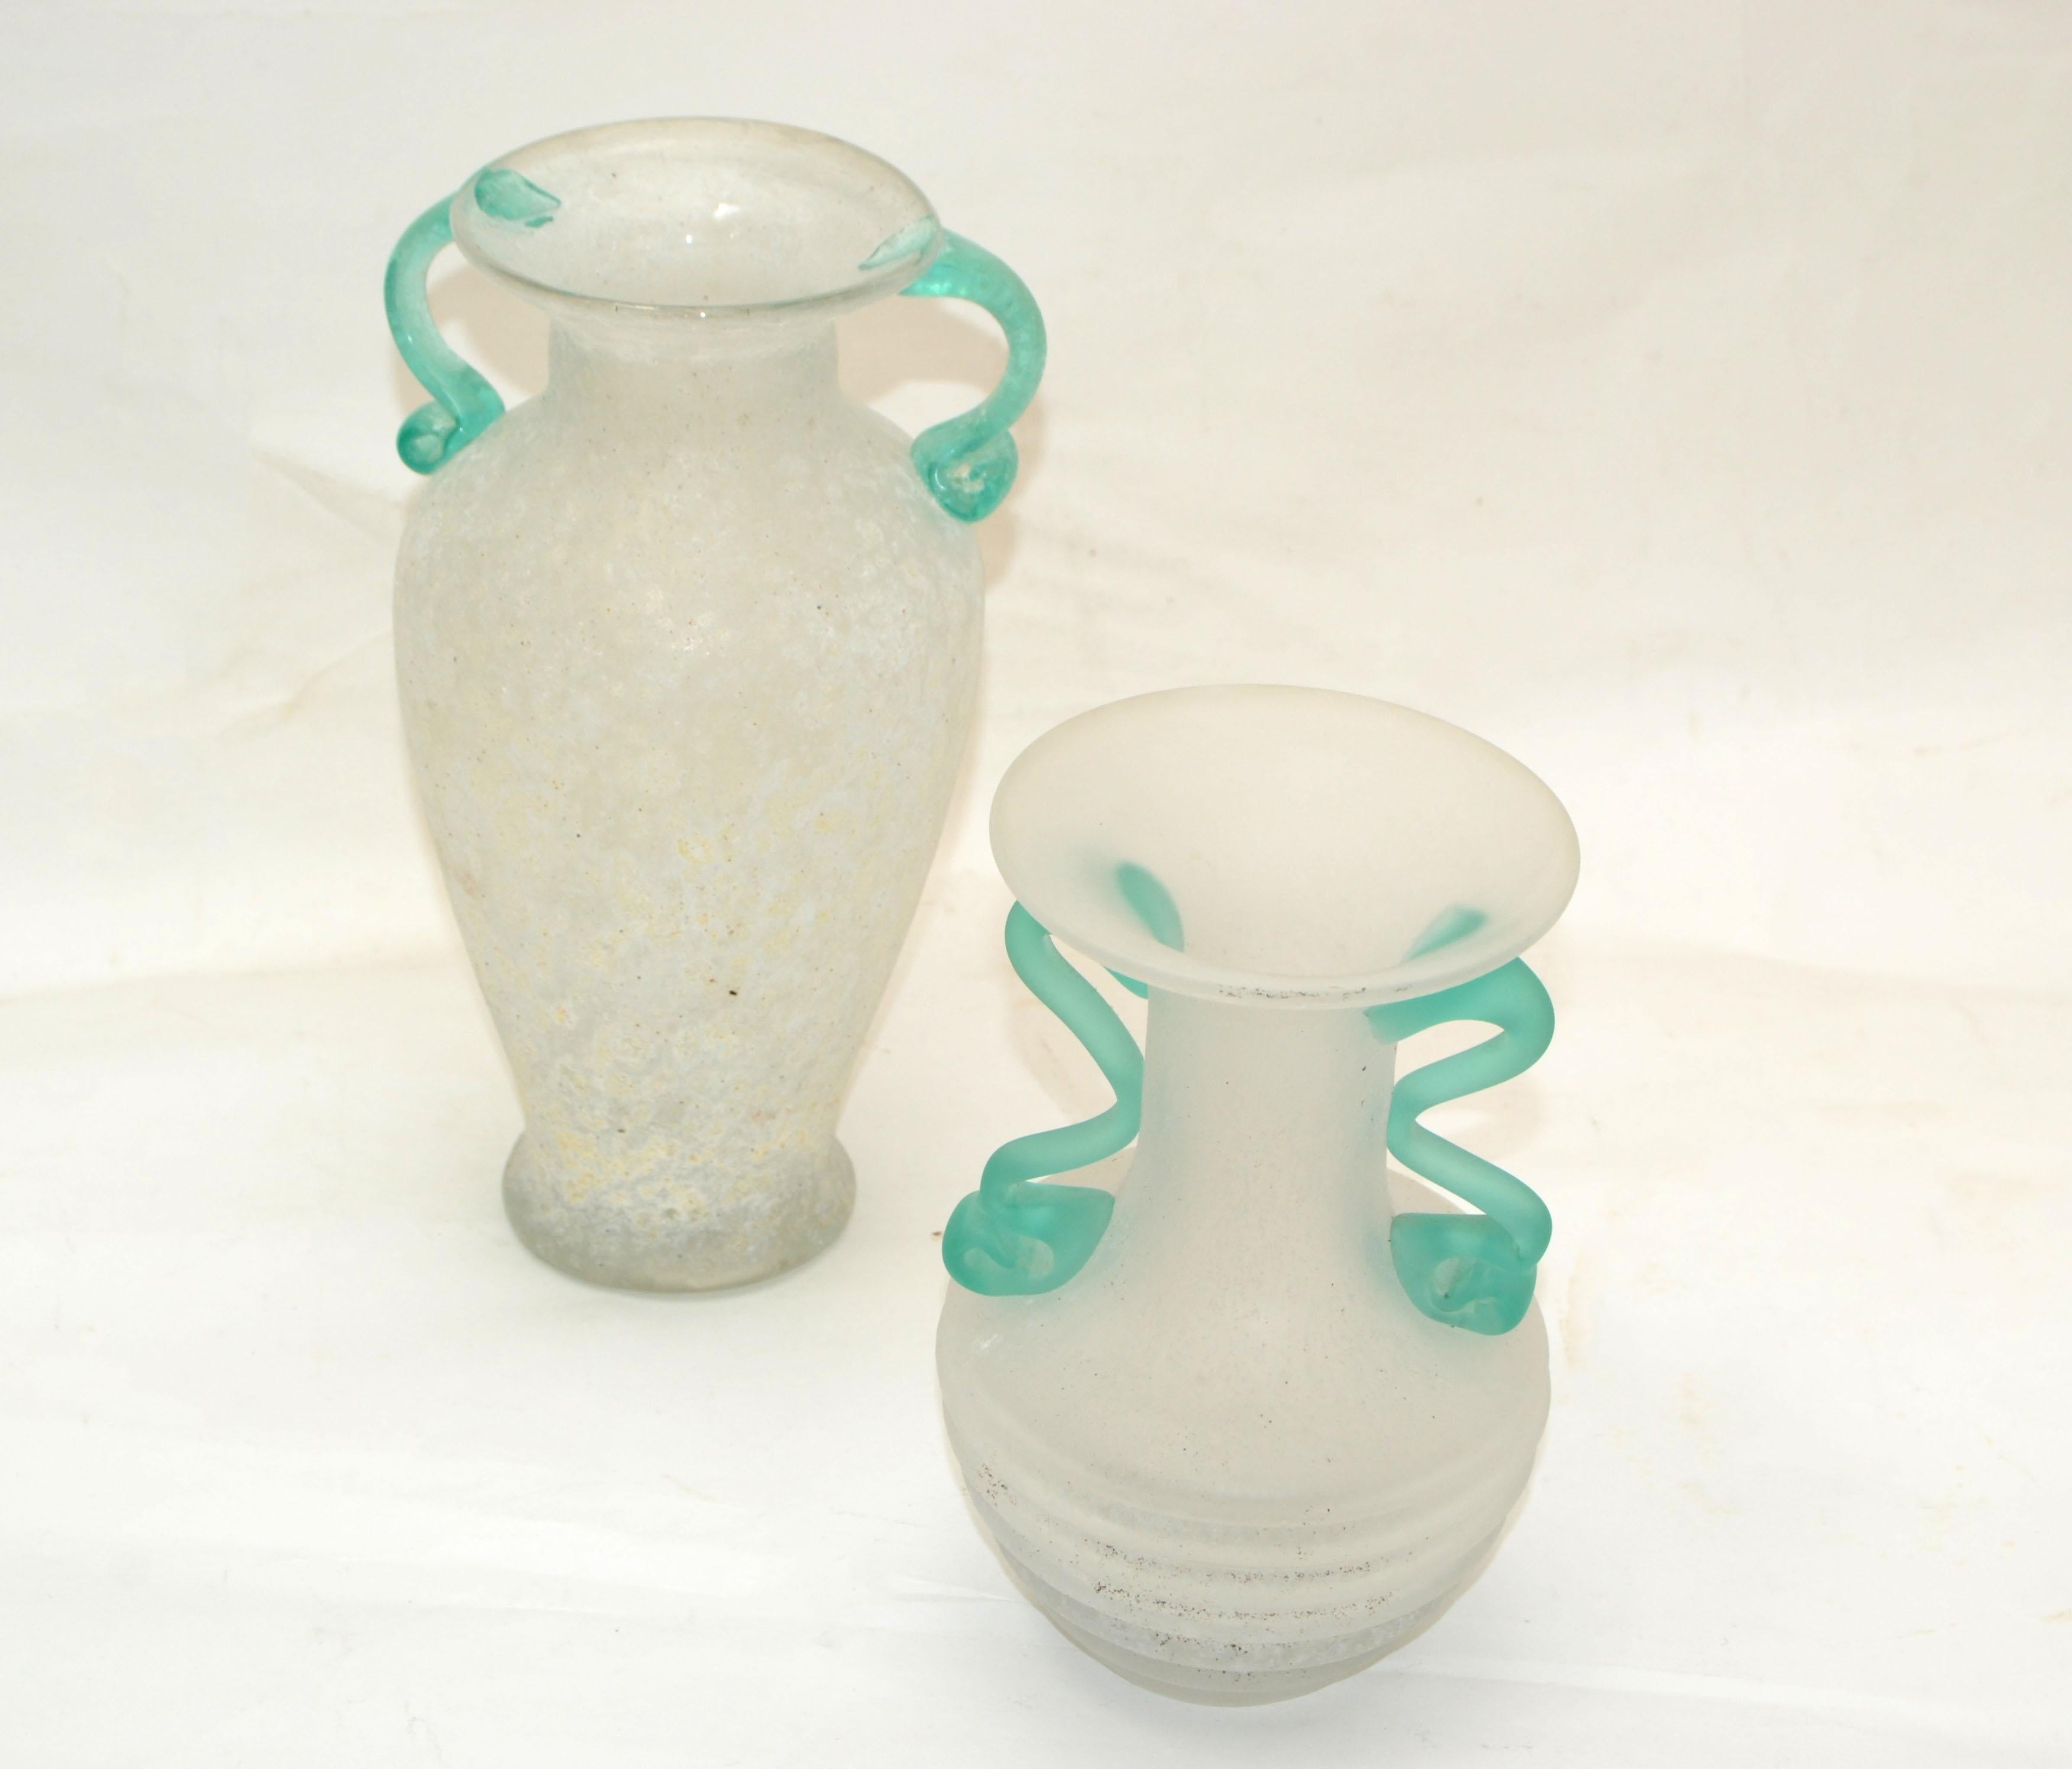 Ensemble de 2 vases, récipients et carafes en verre scavo blanc et vert menthe en verre d'art de Murano Mid-Century Modern fabriqué en Italie en 1980.
Le plus petit vase mesure : 6.5 pouces de hauteur.